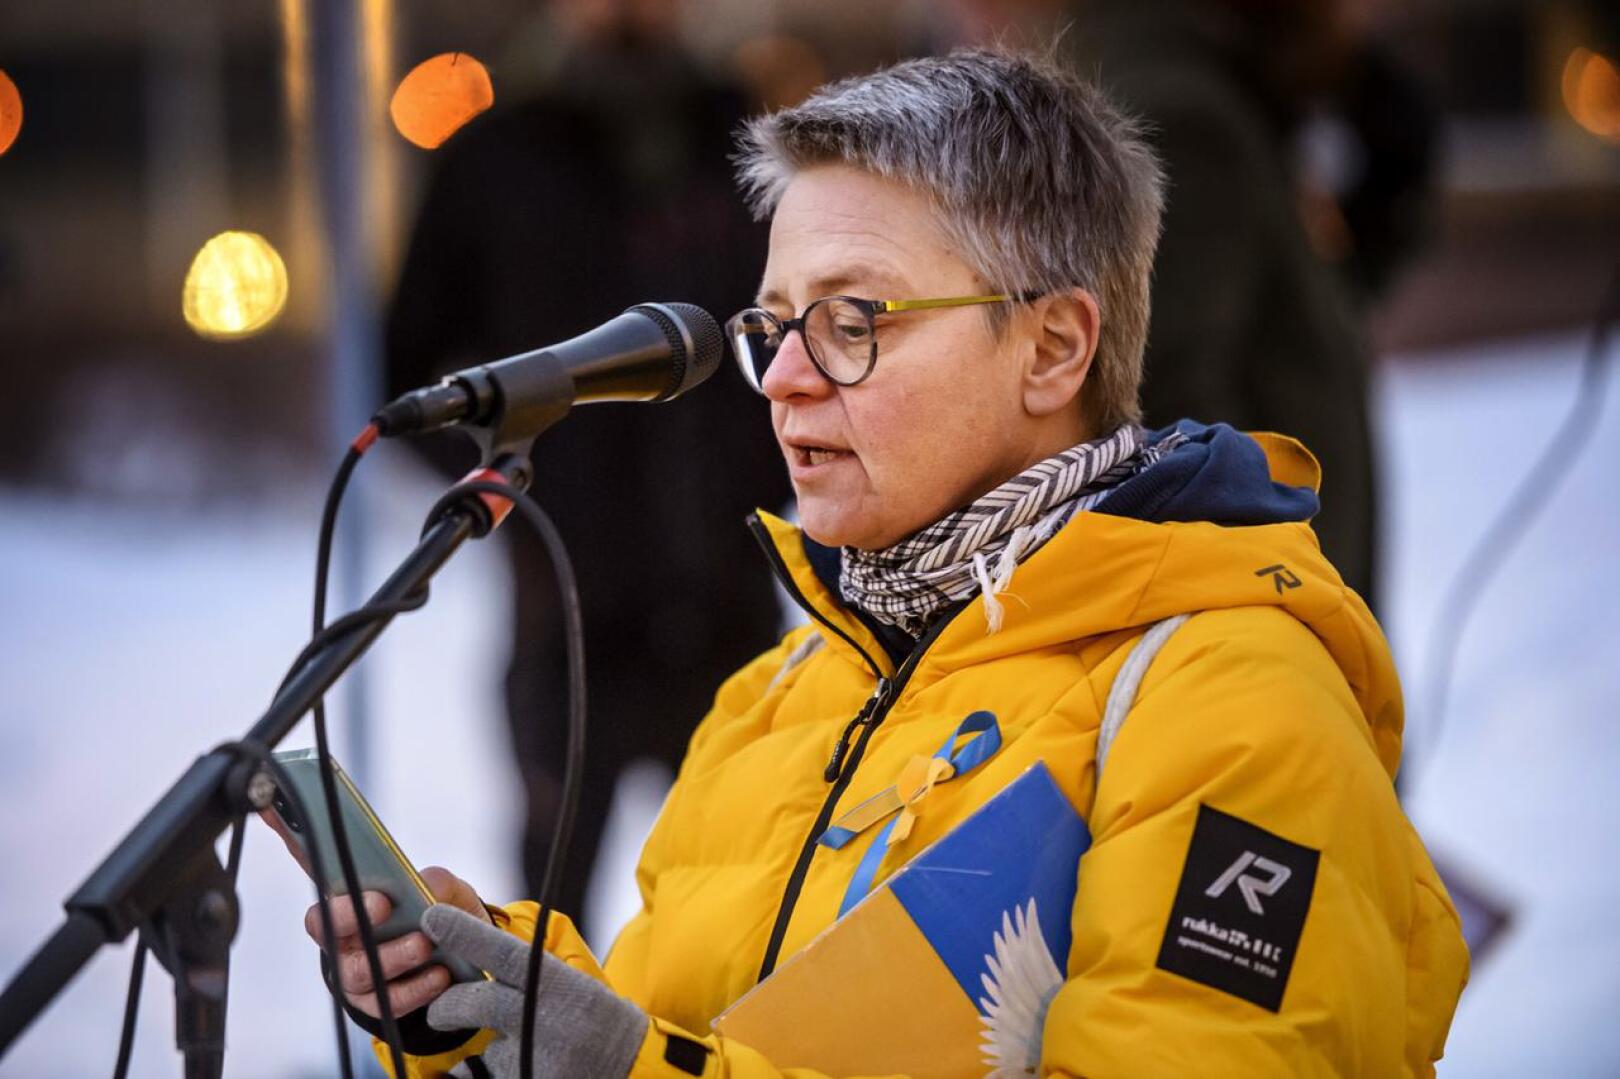 Virpi Karhu johtaa aluevaltuustossa vasemmistoliiton ryhmää.